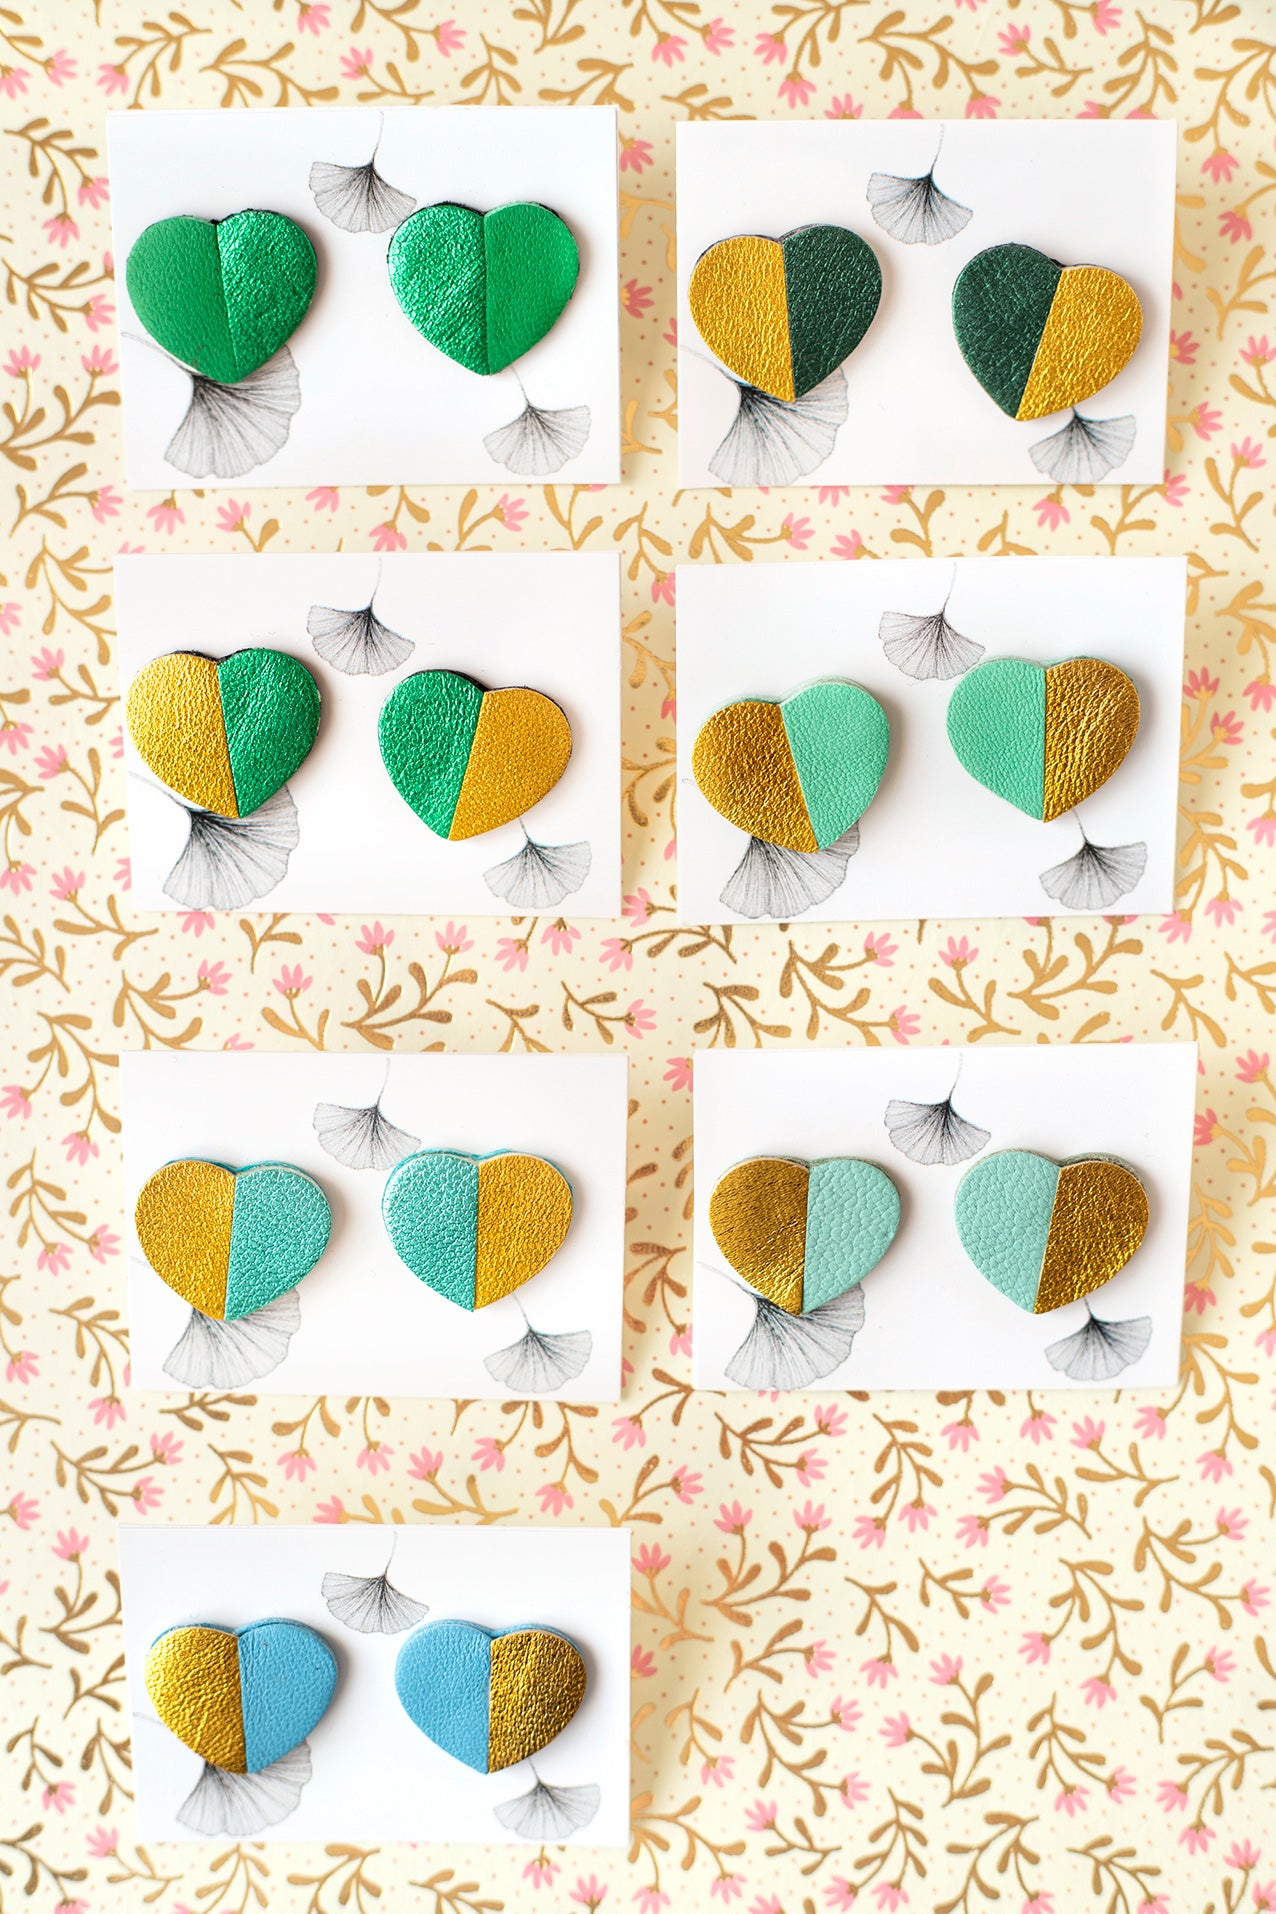 Green or blue heart earrings